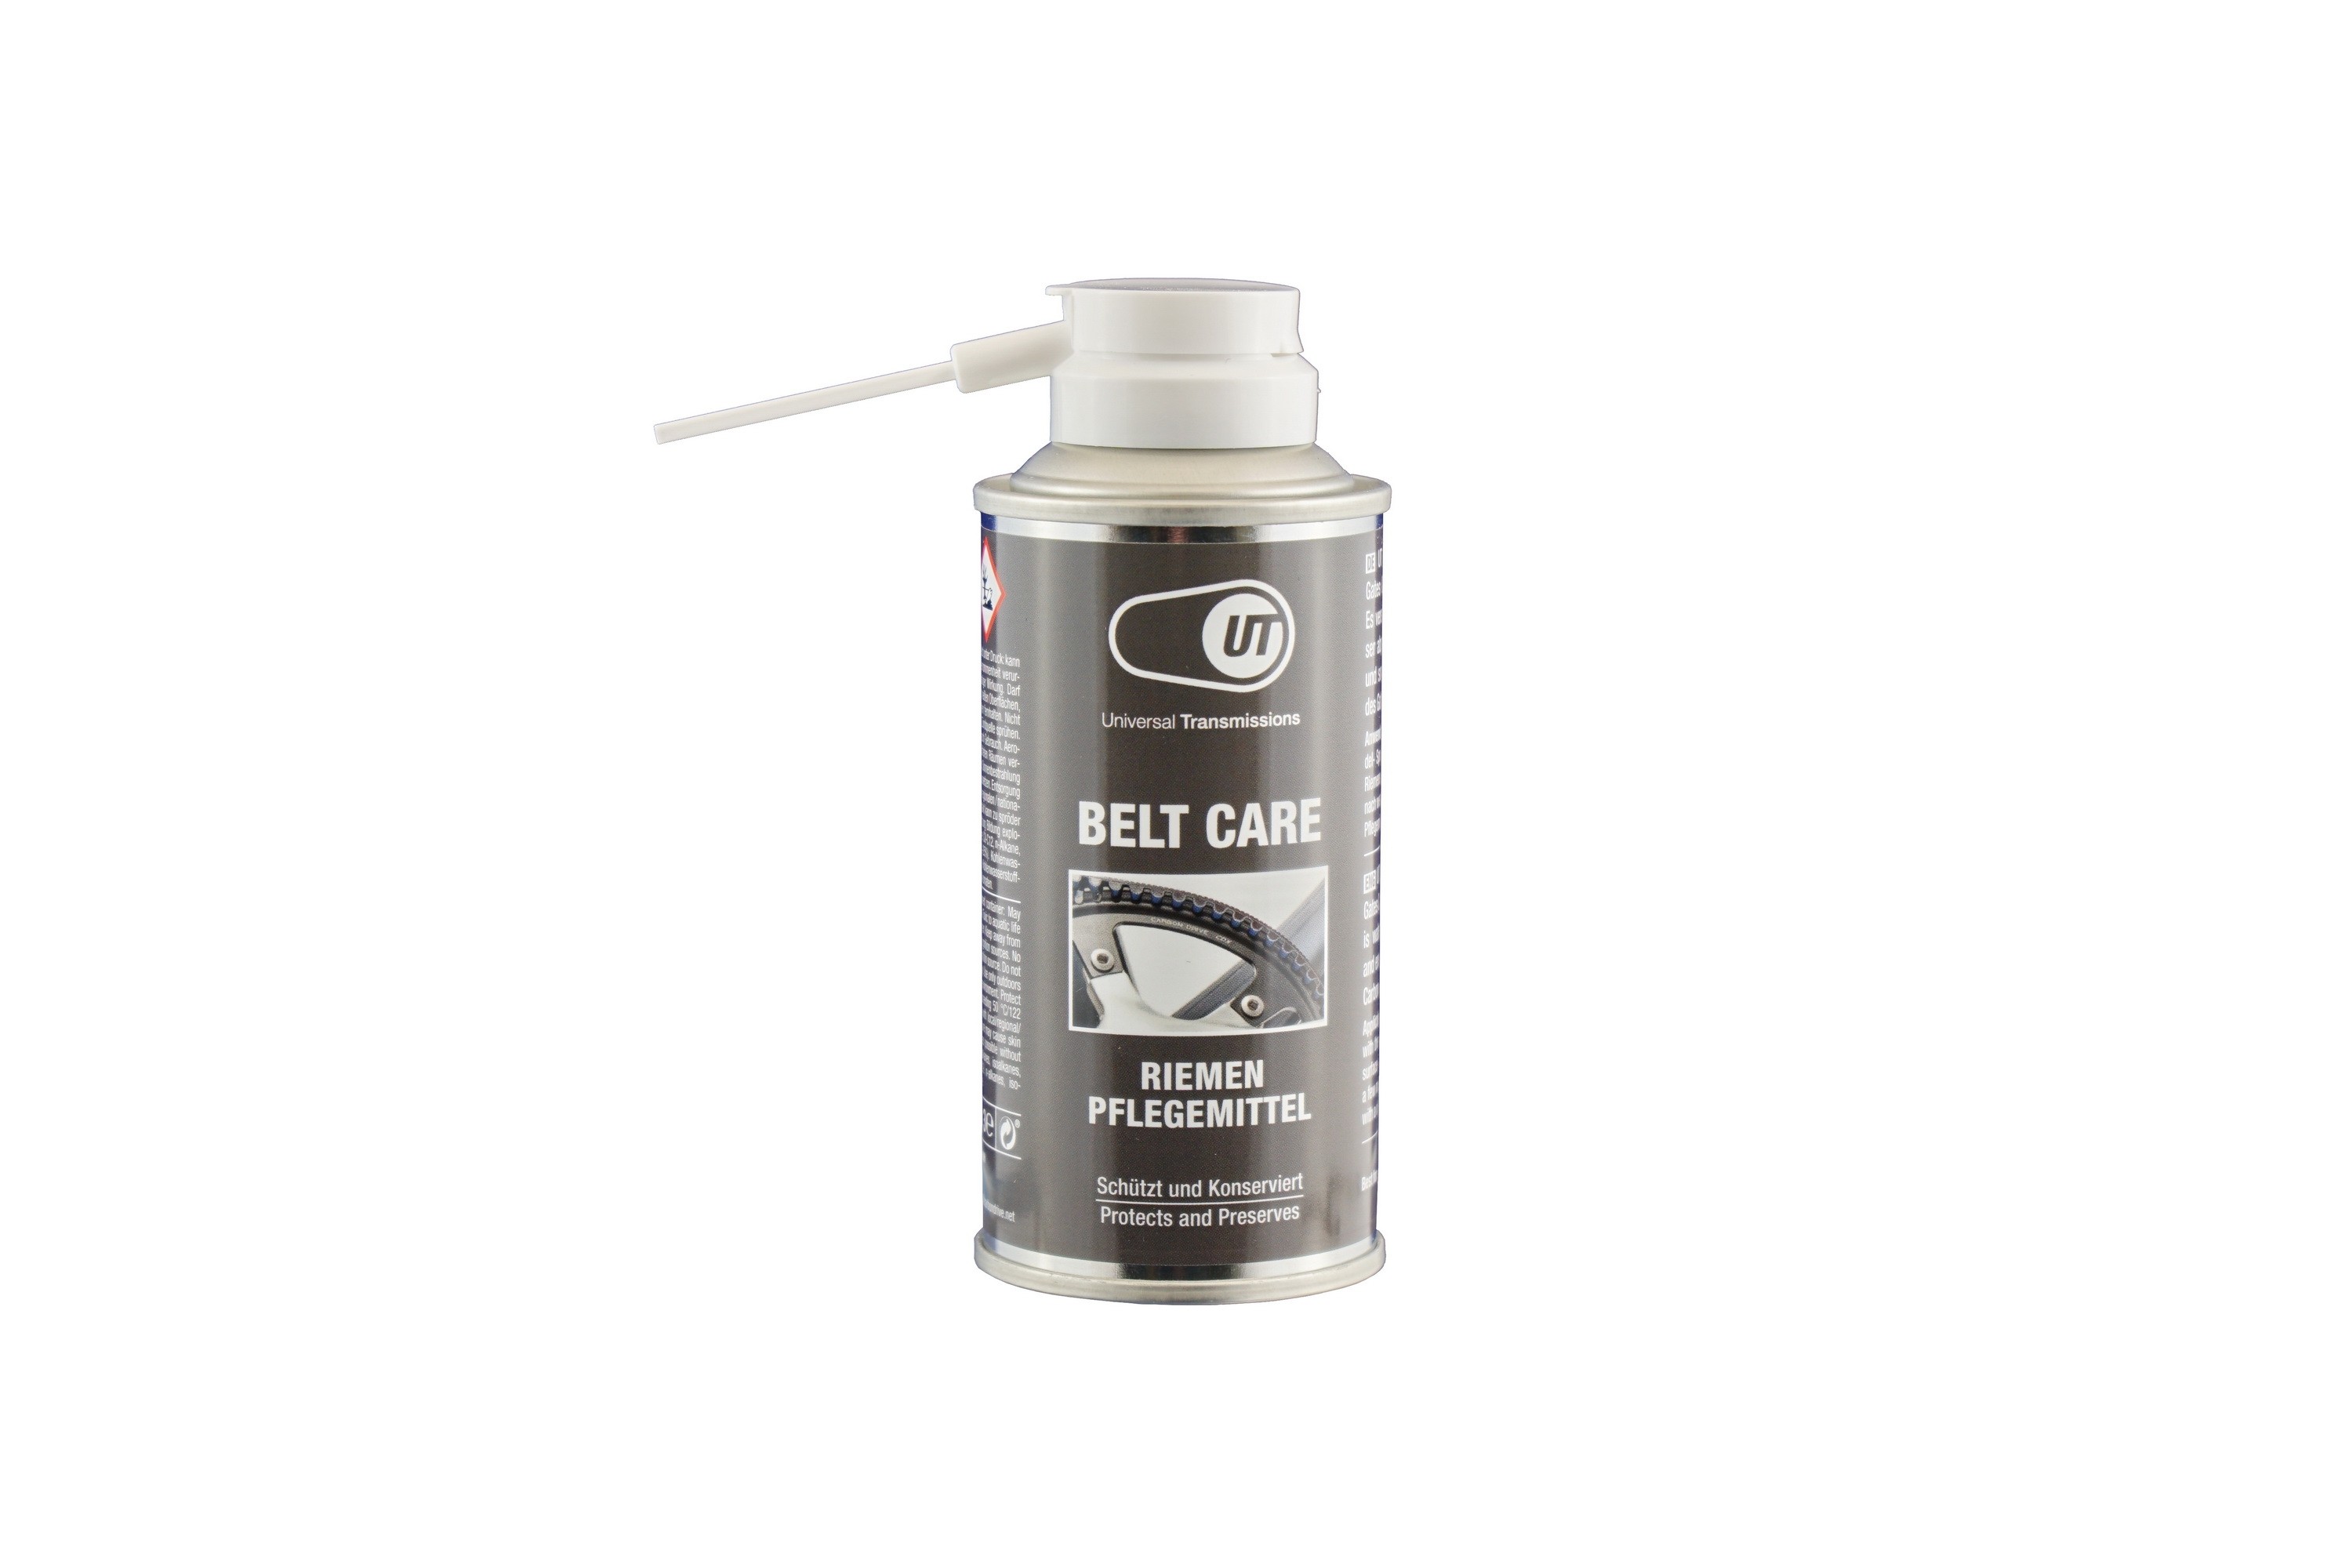 Gates Carbon Drive Riemenpflege für Gates Riemen, 150ml (UT Belt Care)